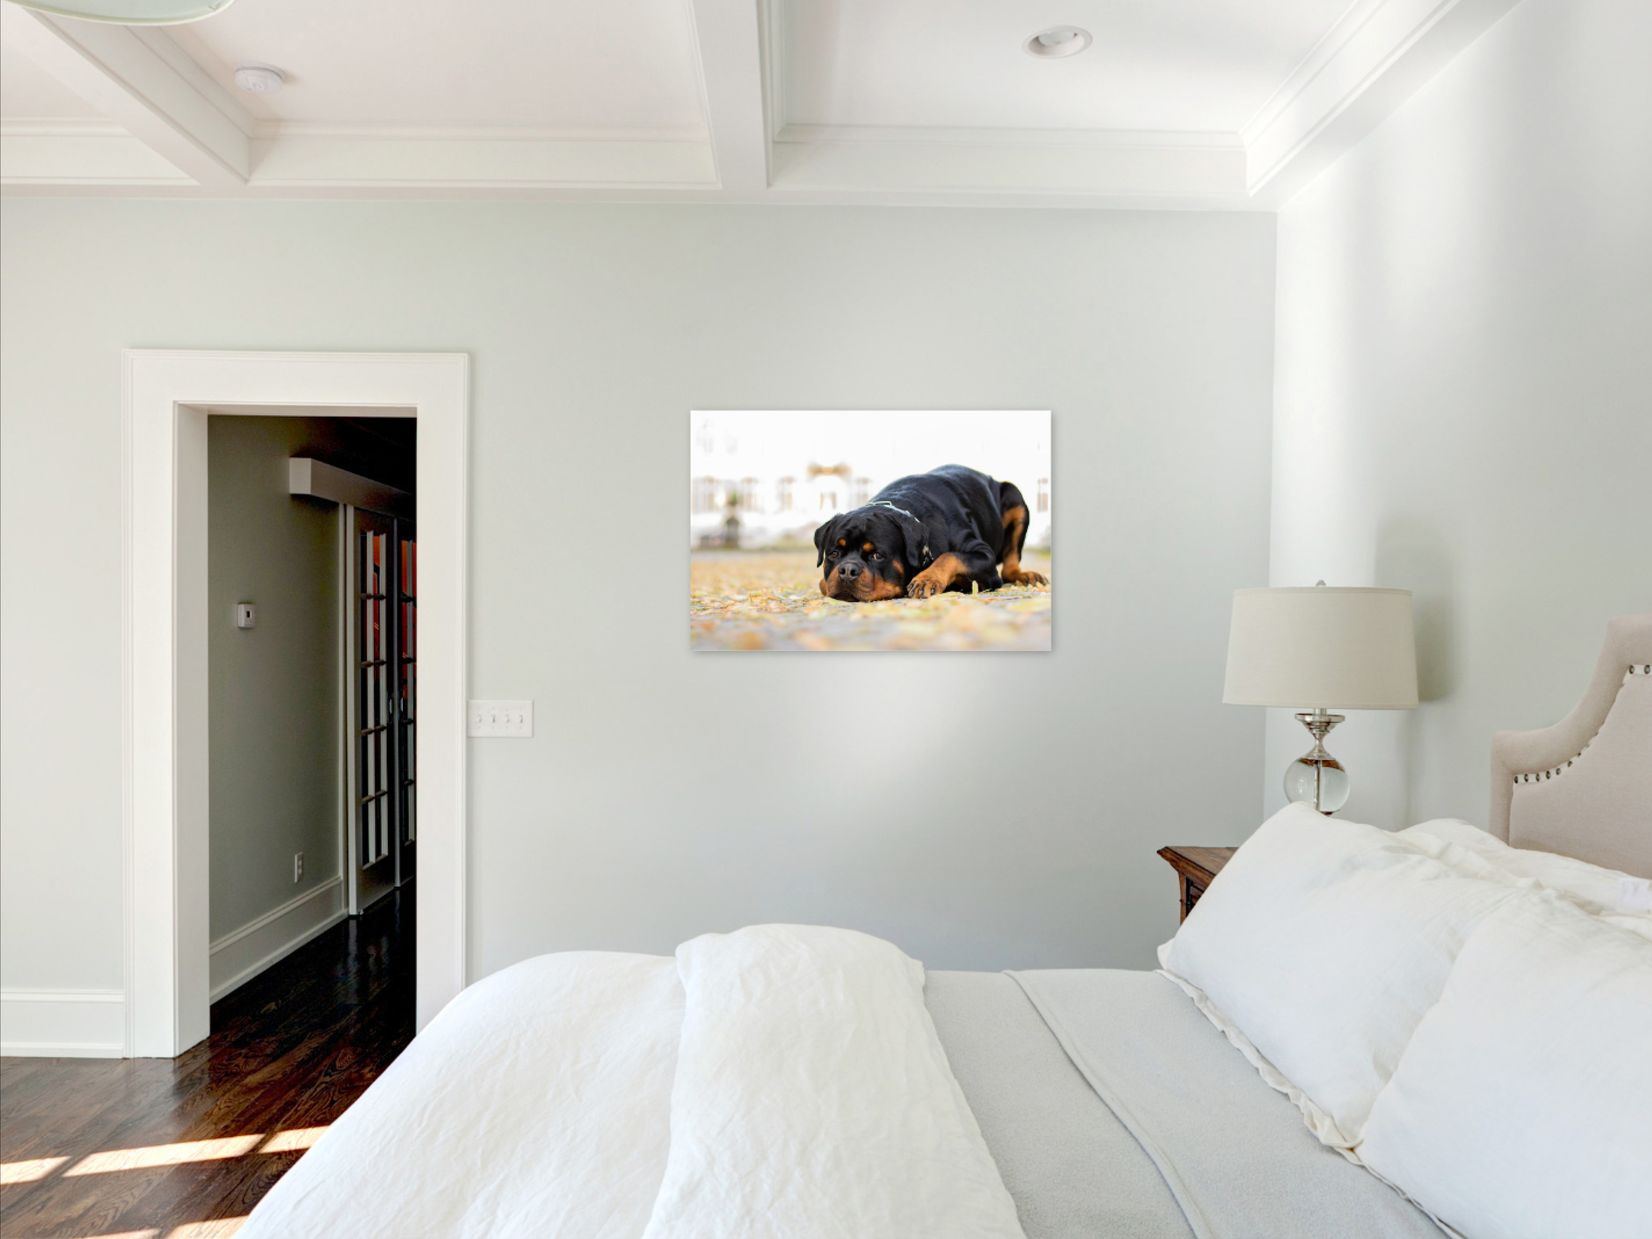 Wandbild mit Hund an Wand in Schlafzimmer